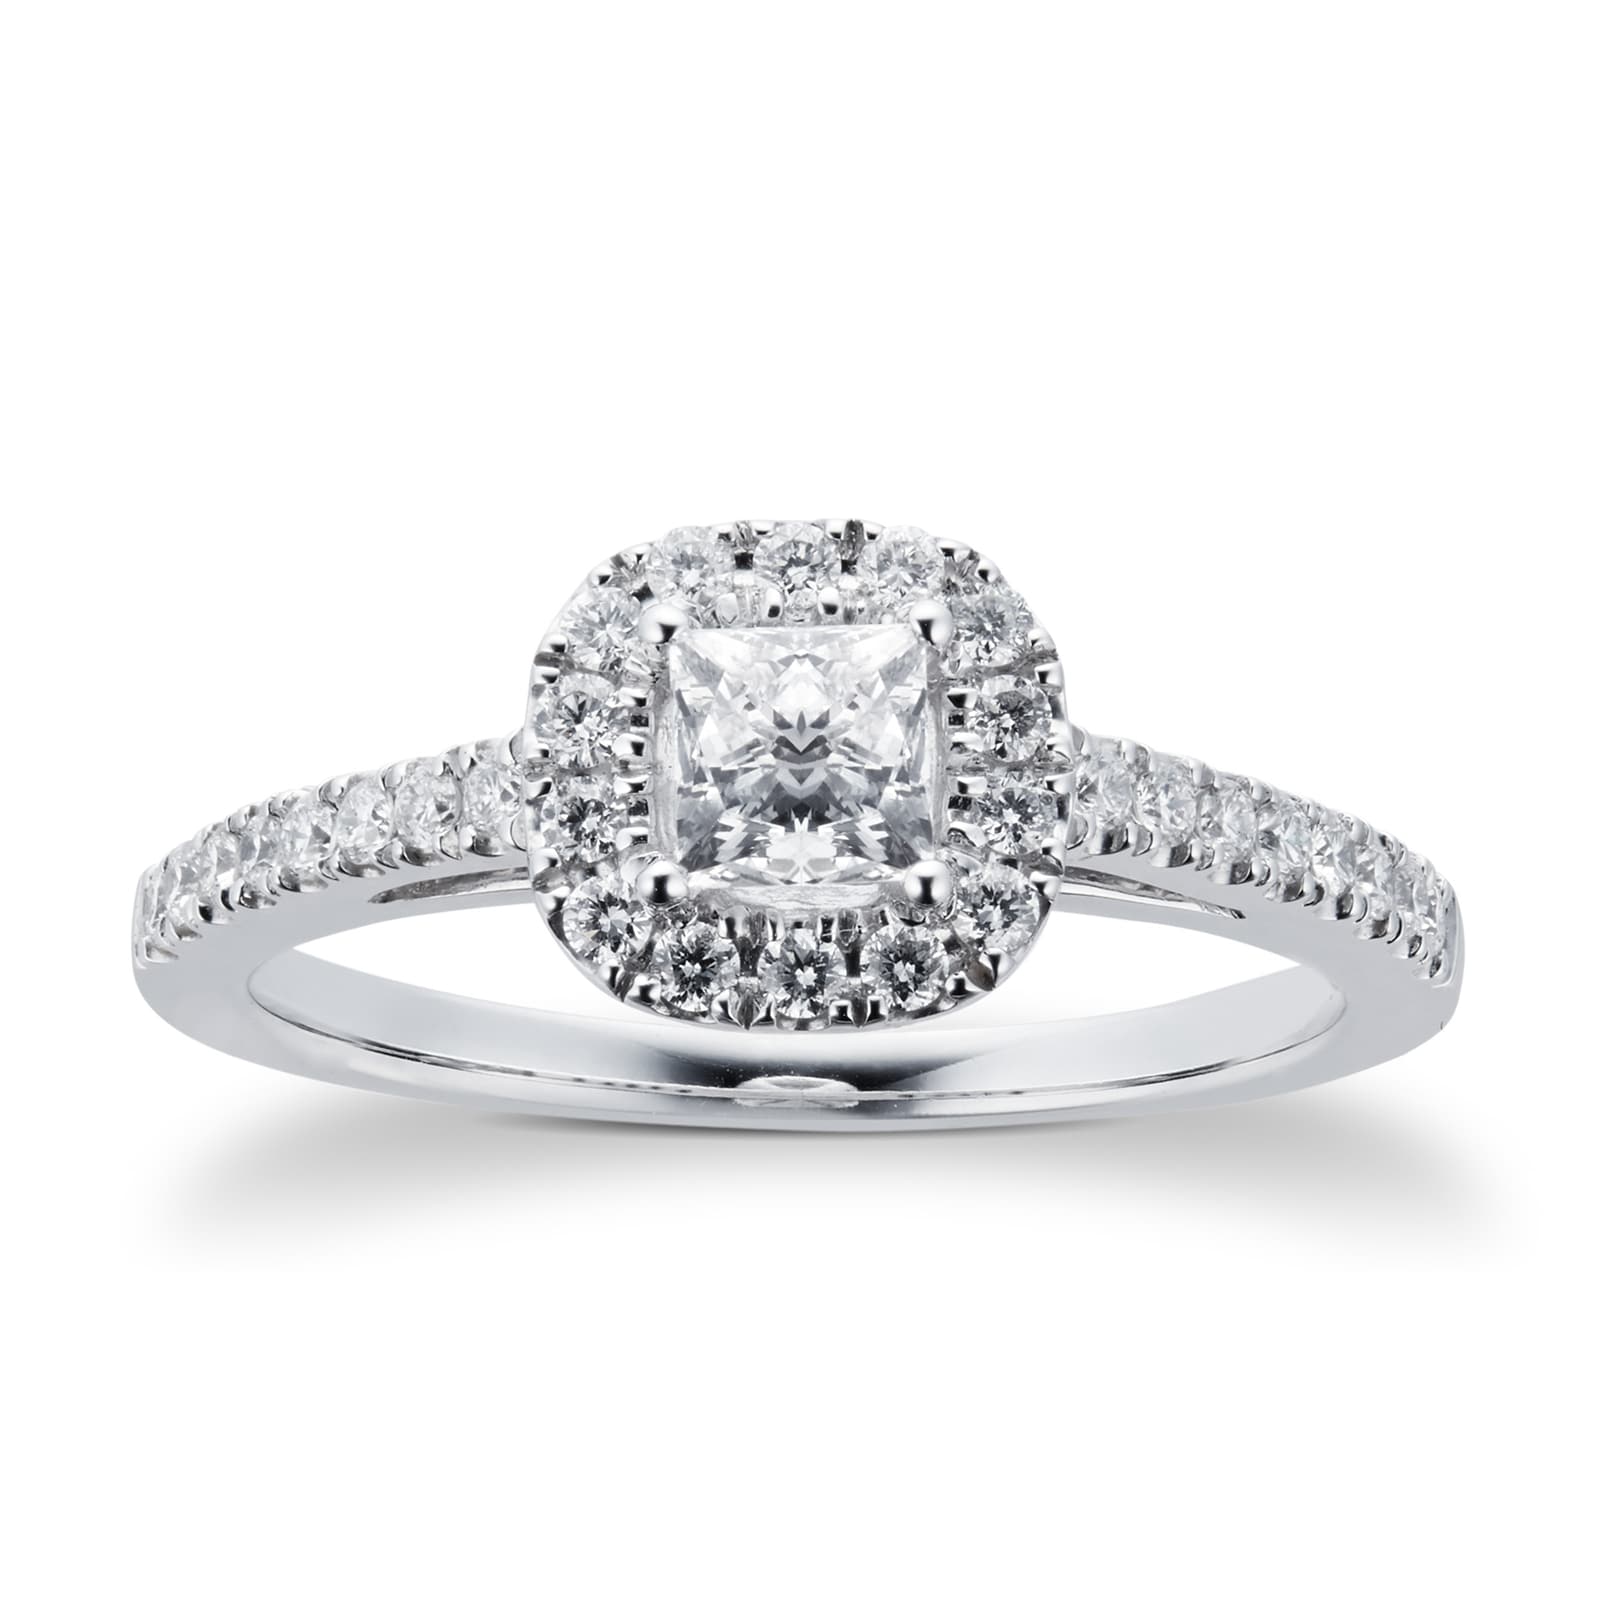 18ct White Gold Princess Cut 065 Carat 88 Facet Diamond Ring Ring Size M